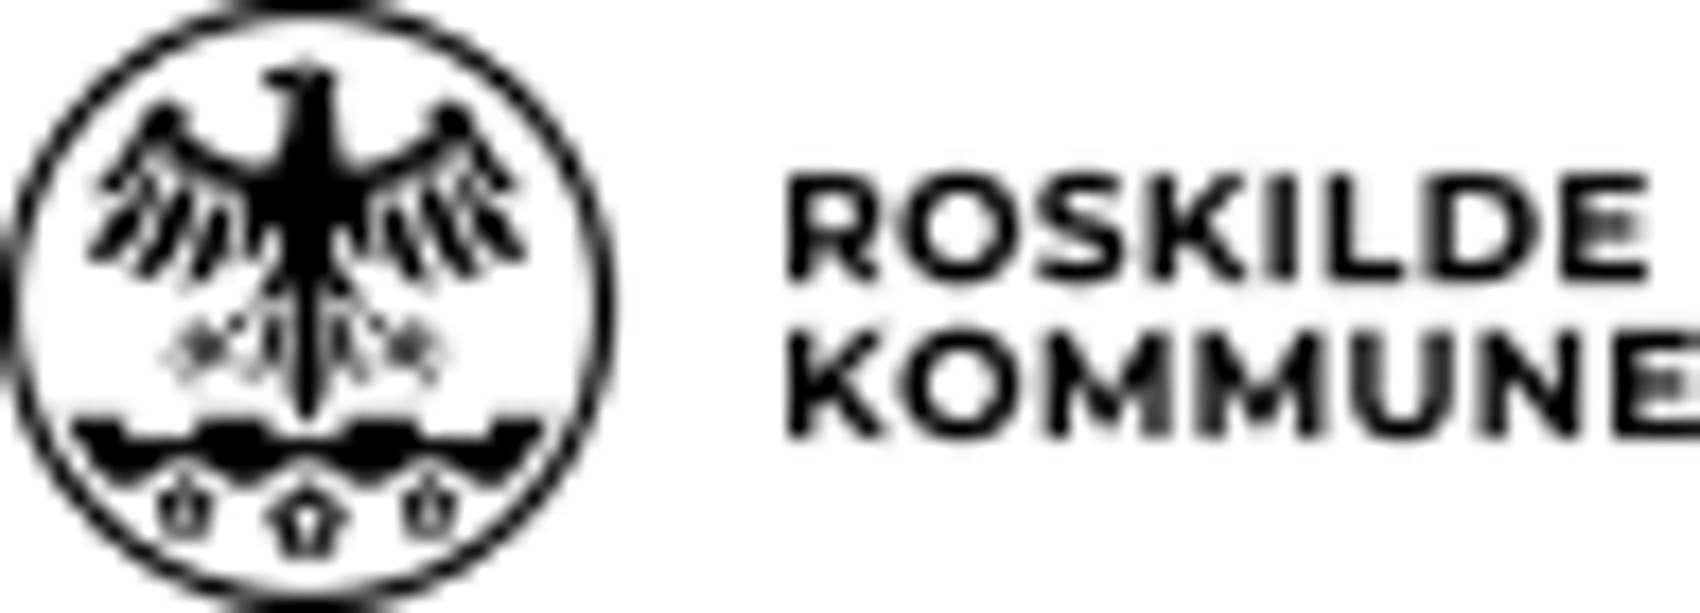 Rk logo rgb 1 sort 1